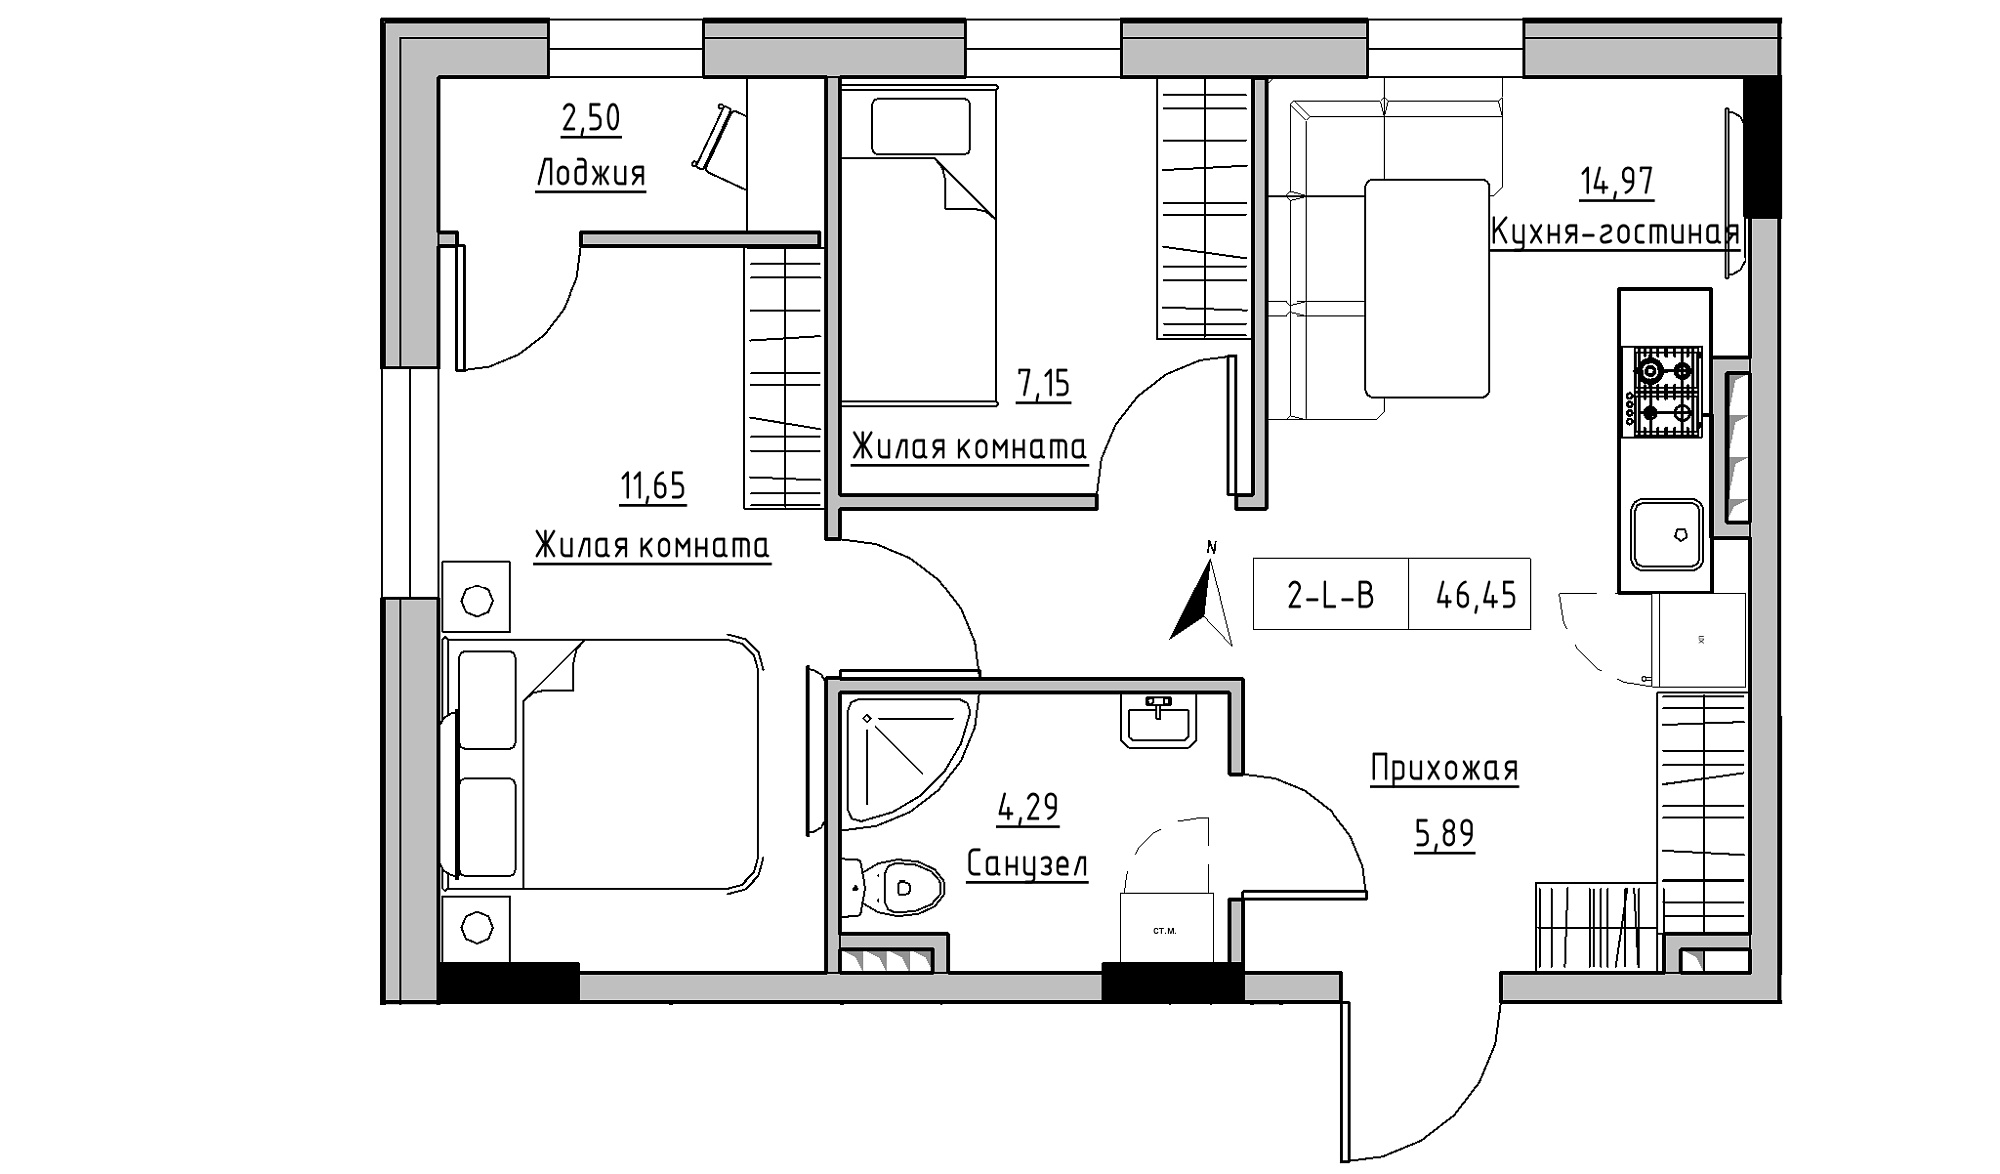 Планування 2-к квартира площею 46.45м2, KS-025-03/0006.